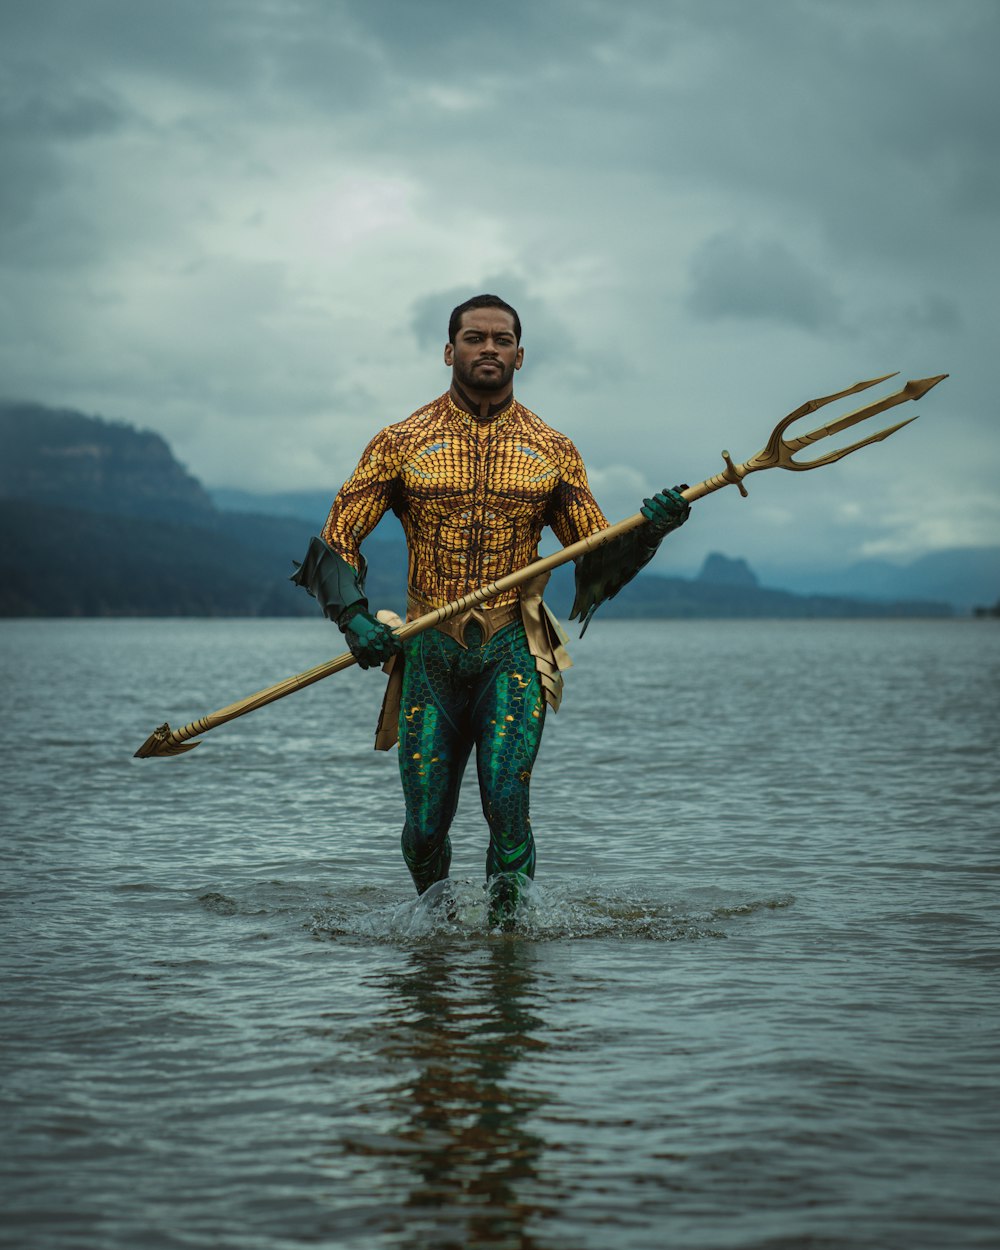 Un hombre parado en un cuerpo de agua sosteniendo una lanza